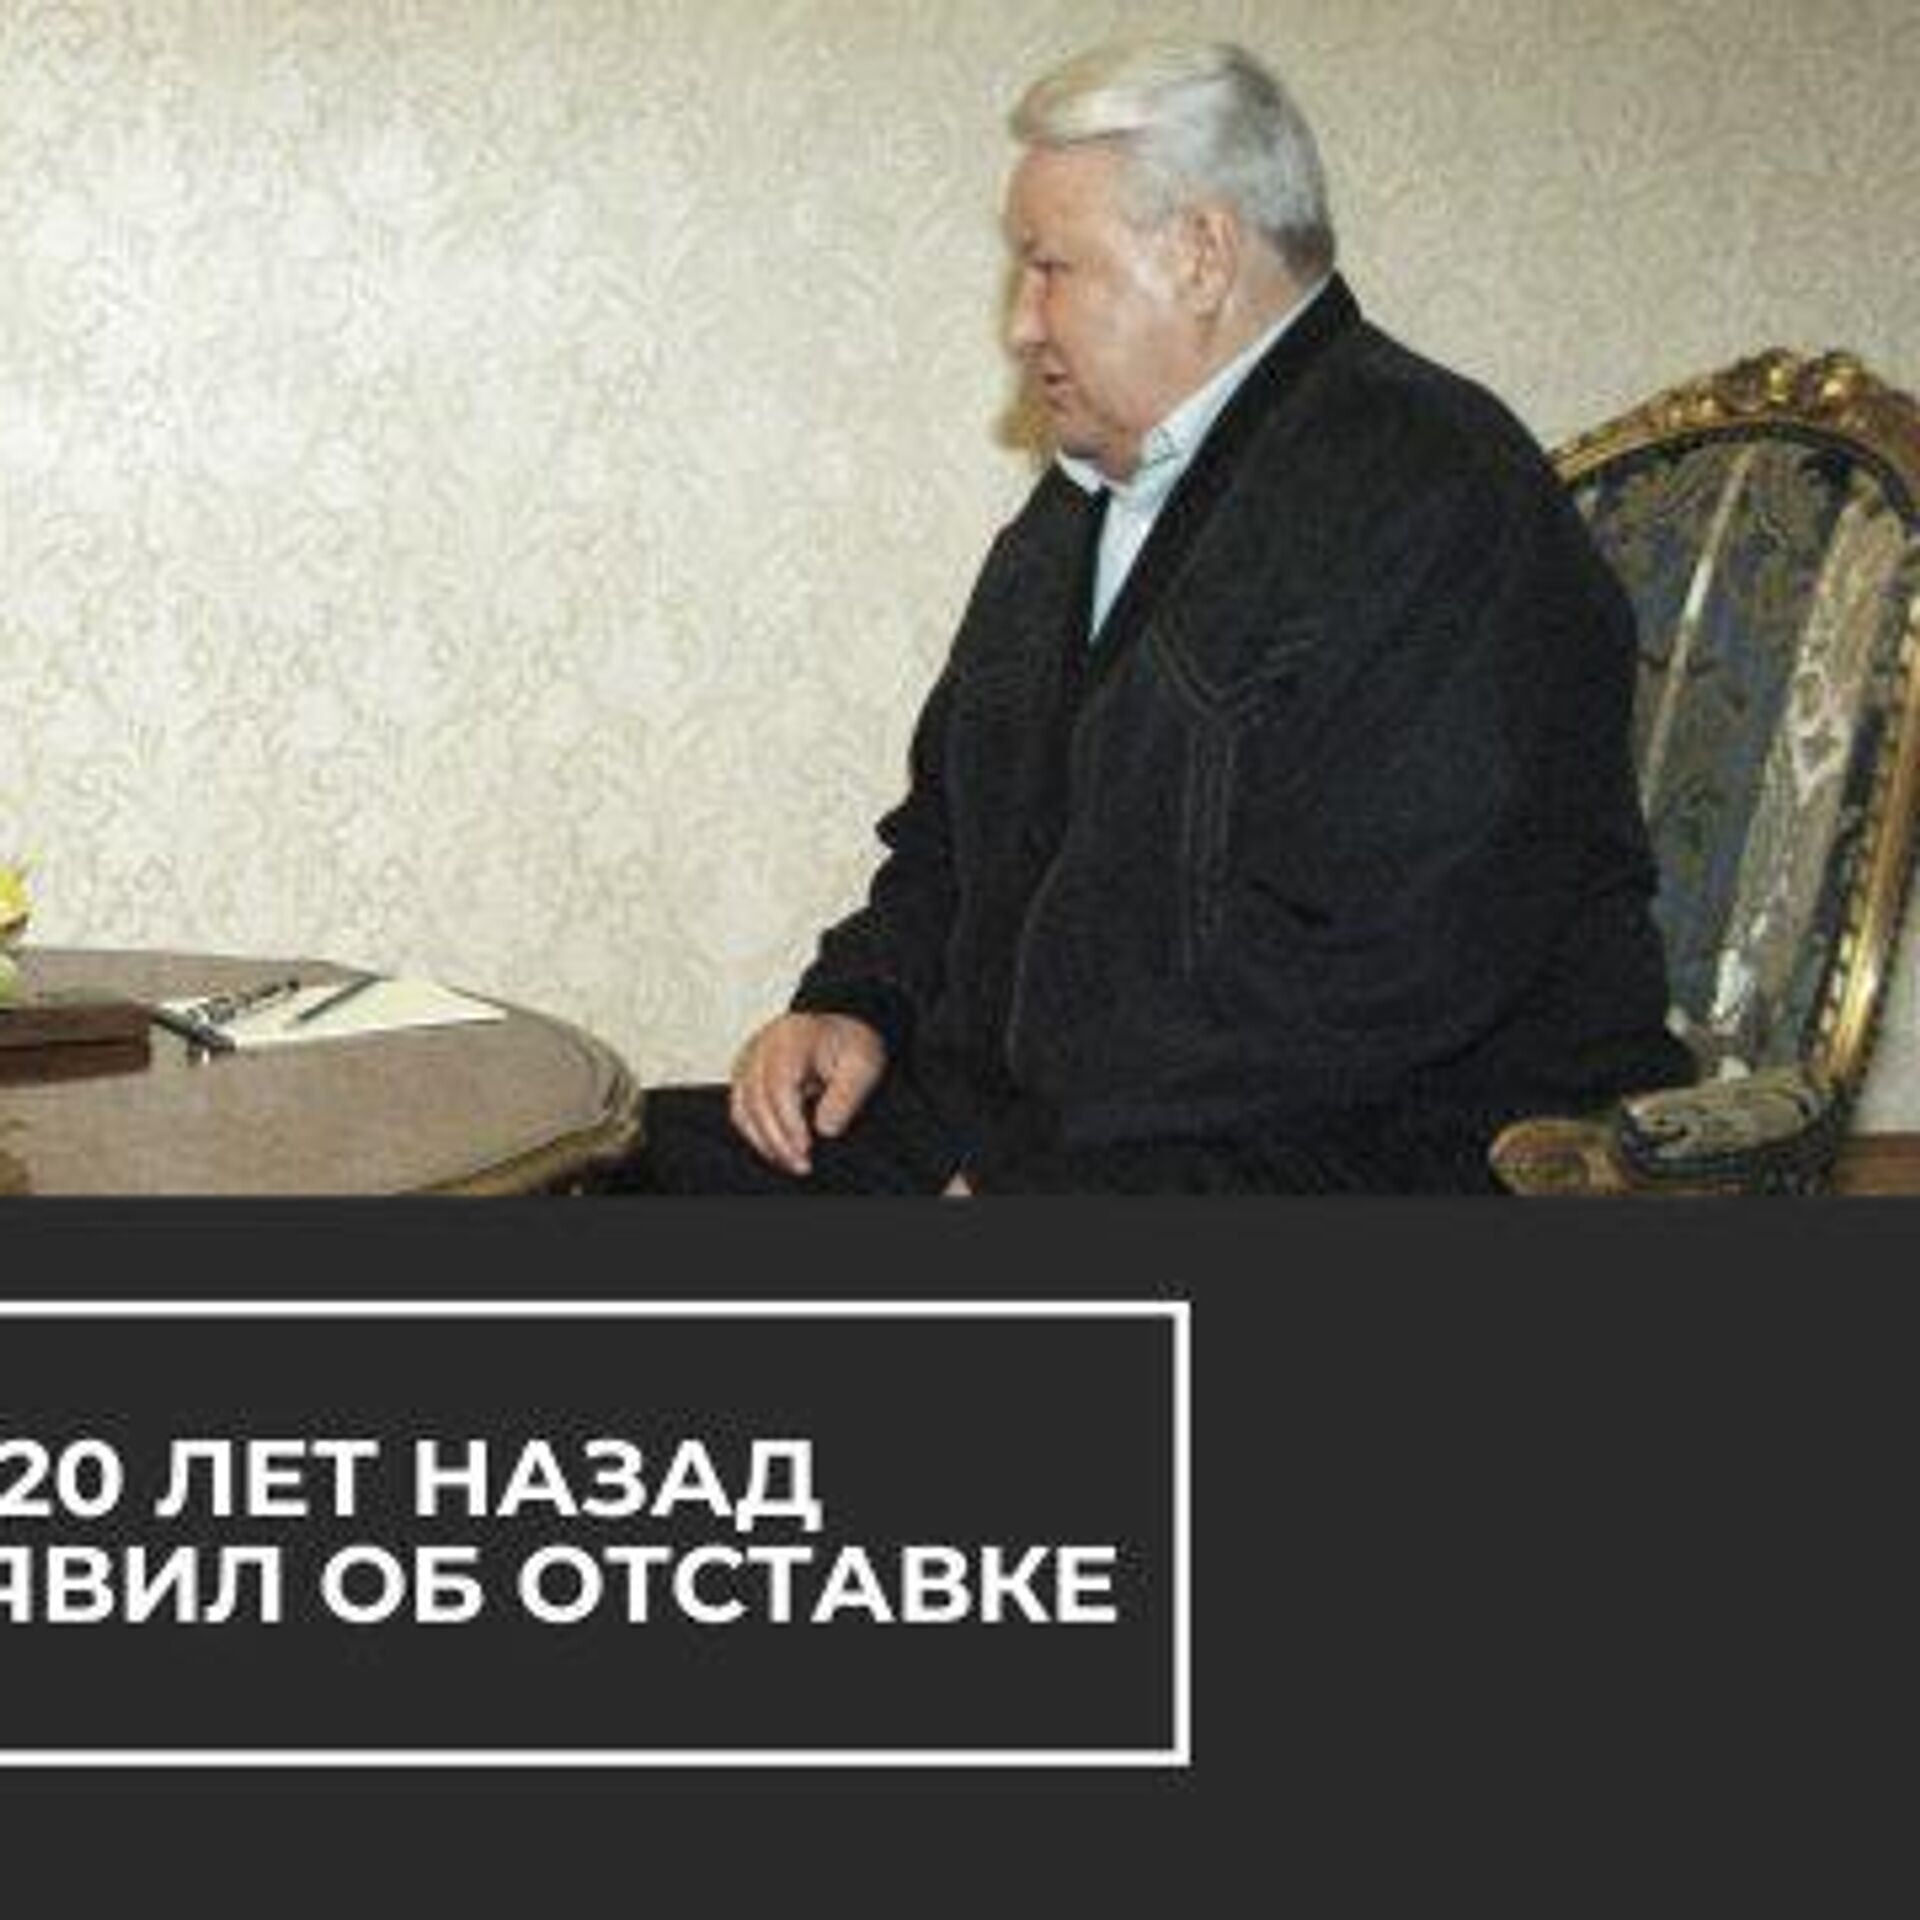 Ельцин 31 декабря 1999. Отставка президента б.н. Ельцина..